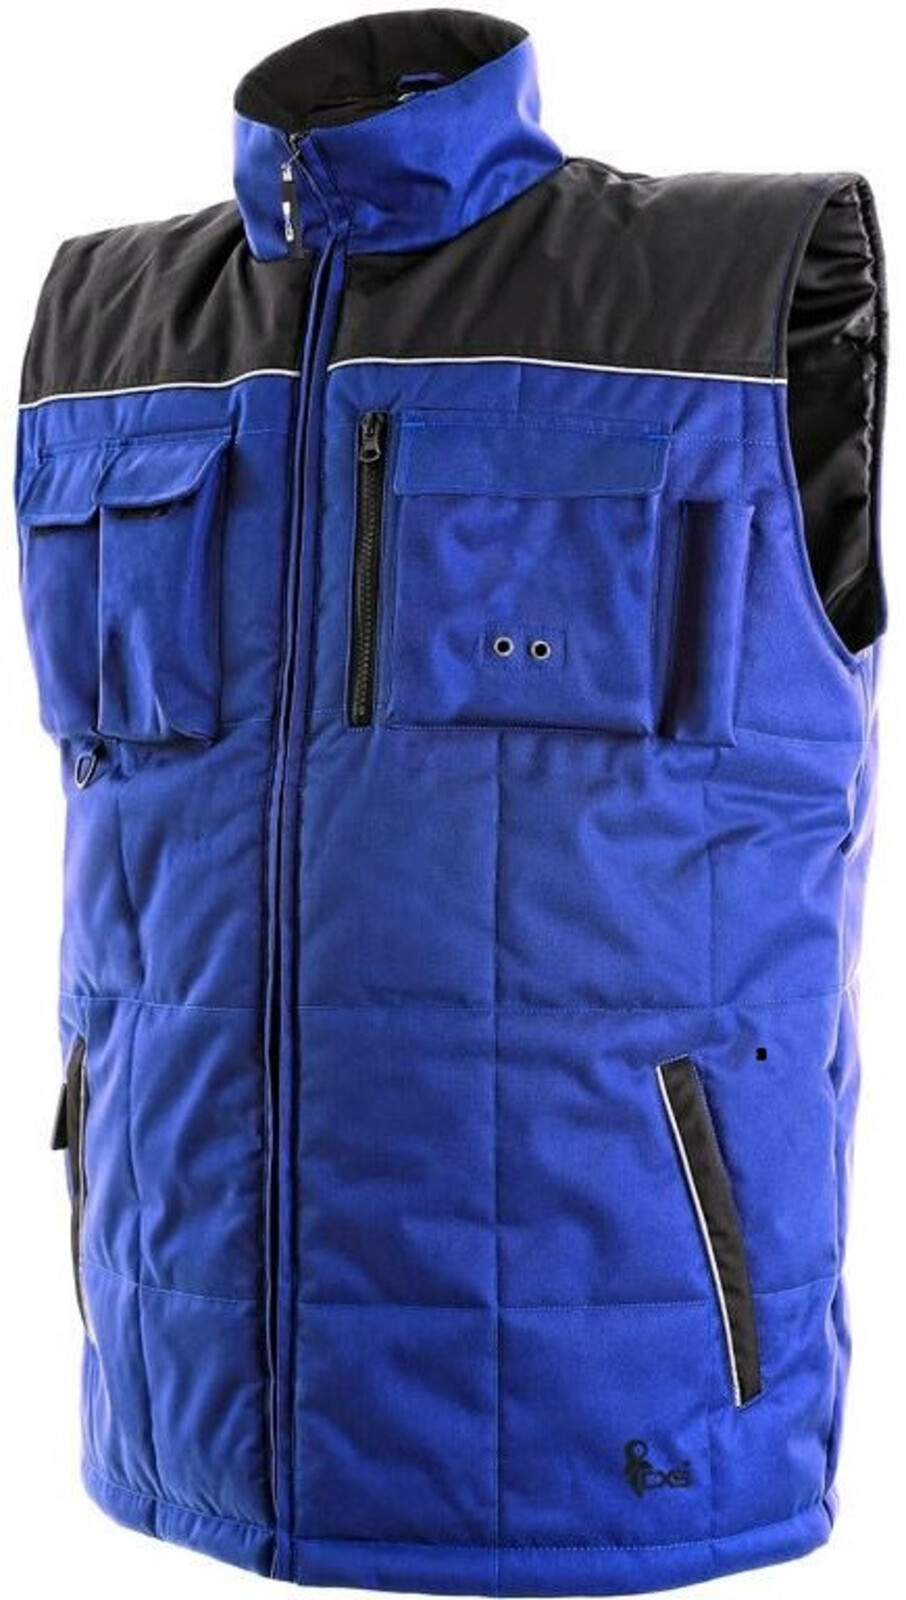 Pánska zateplená zimná vesta CXS Seattle - veľkosť: L, farba: modrá/čierna